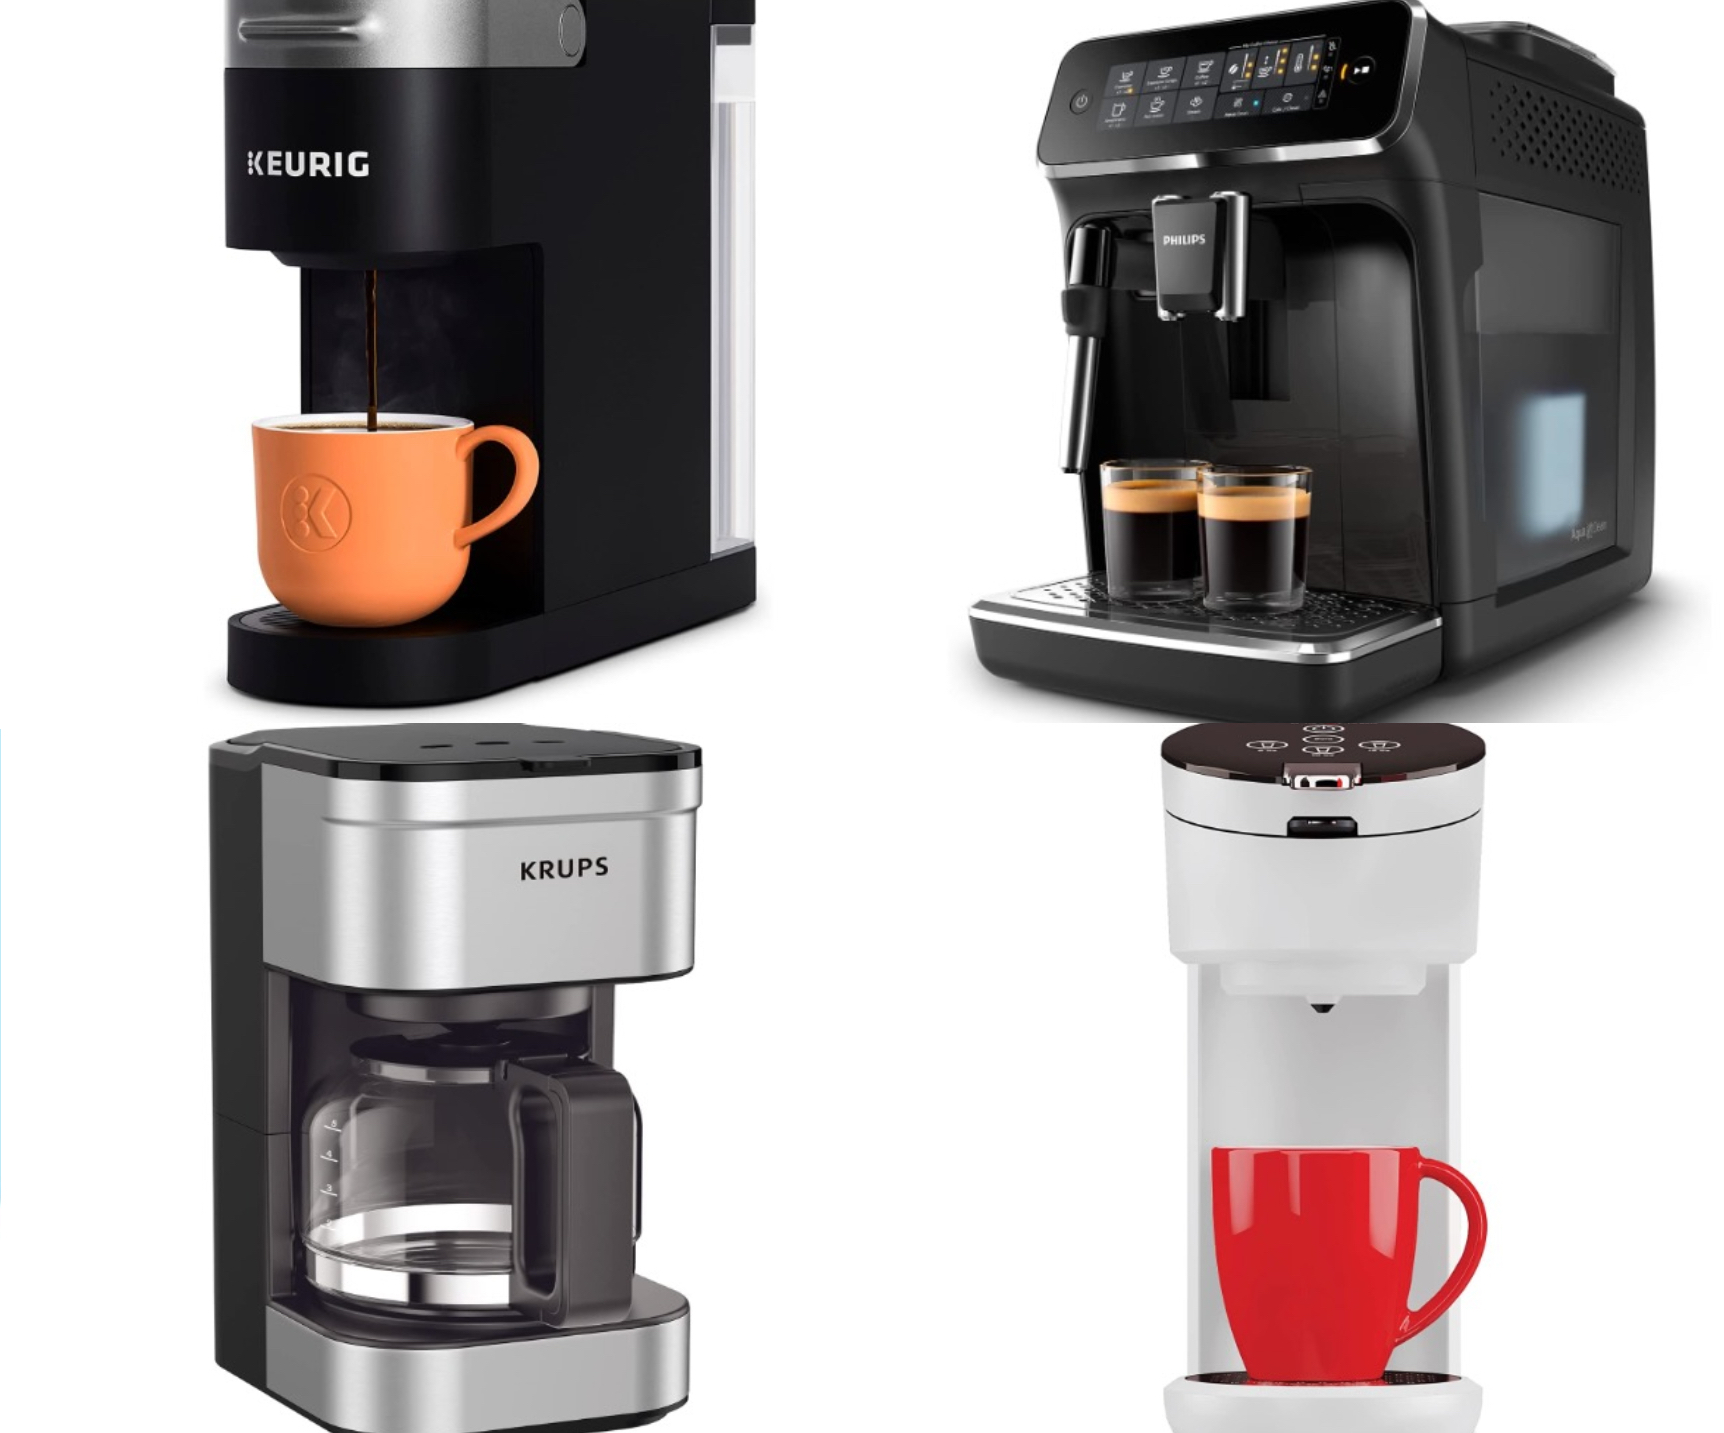 11 Best Prime Day Coffee Maker Deals: Save on Keurig, Breville